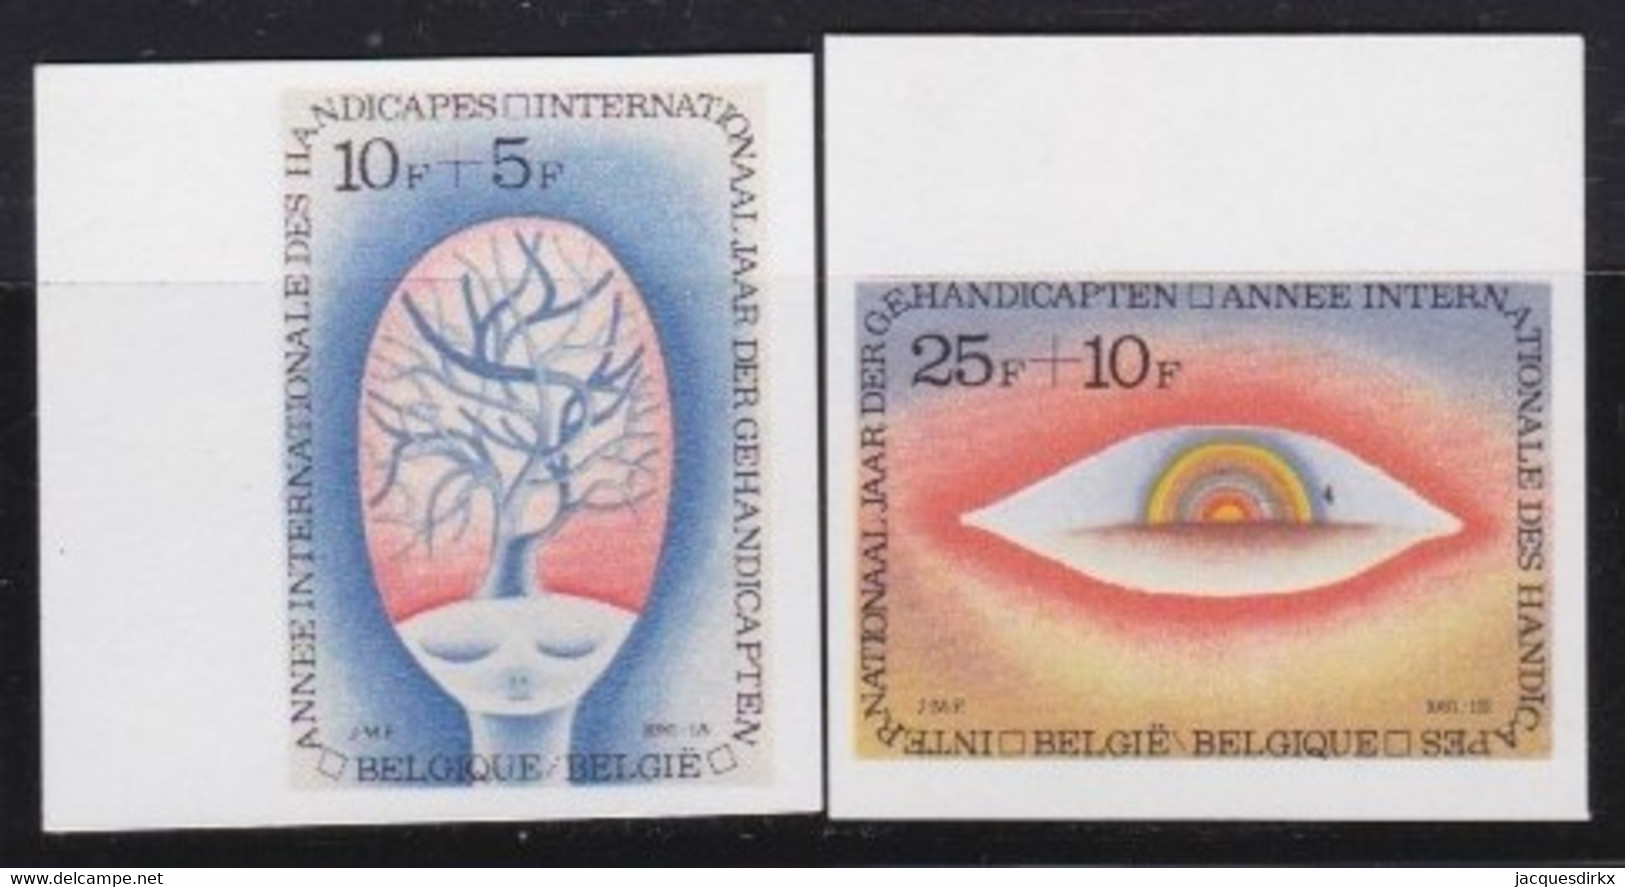 Belgie   .  OBP  .   1999/2000    .    Ongetand / Non-dentelé    ,    **  .   Postfris  .   /   Neuf SANS Charnière - Unused Stamps